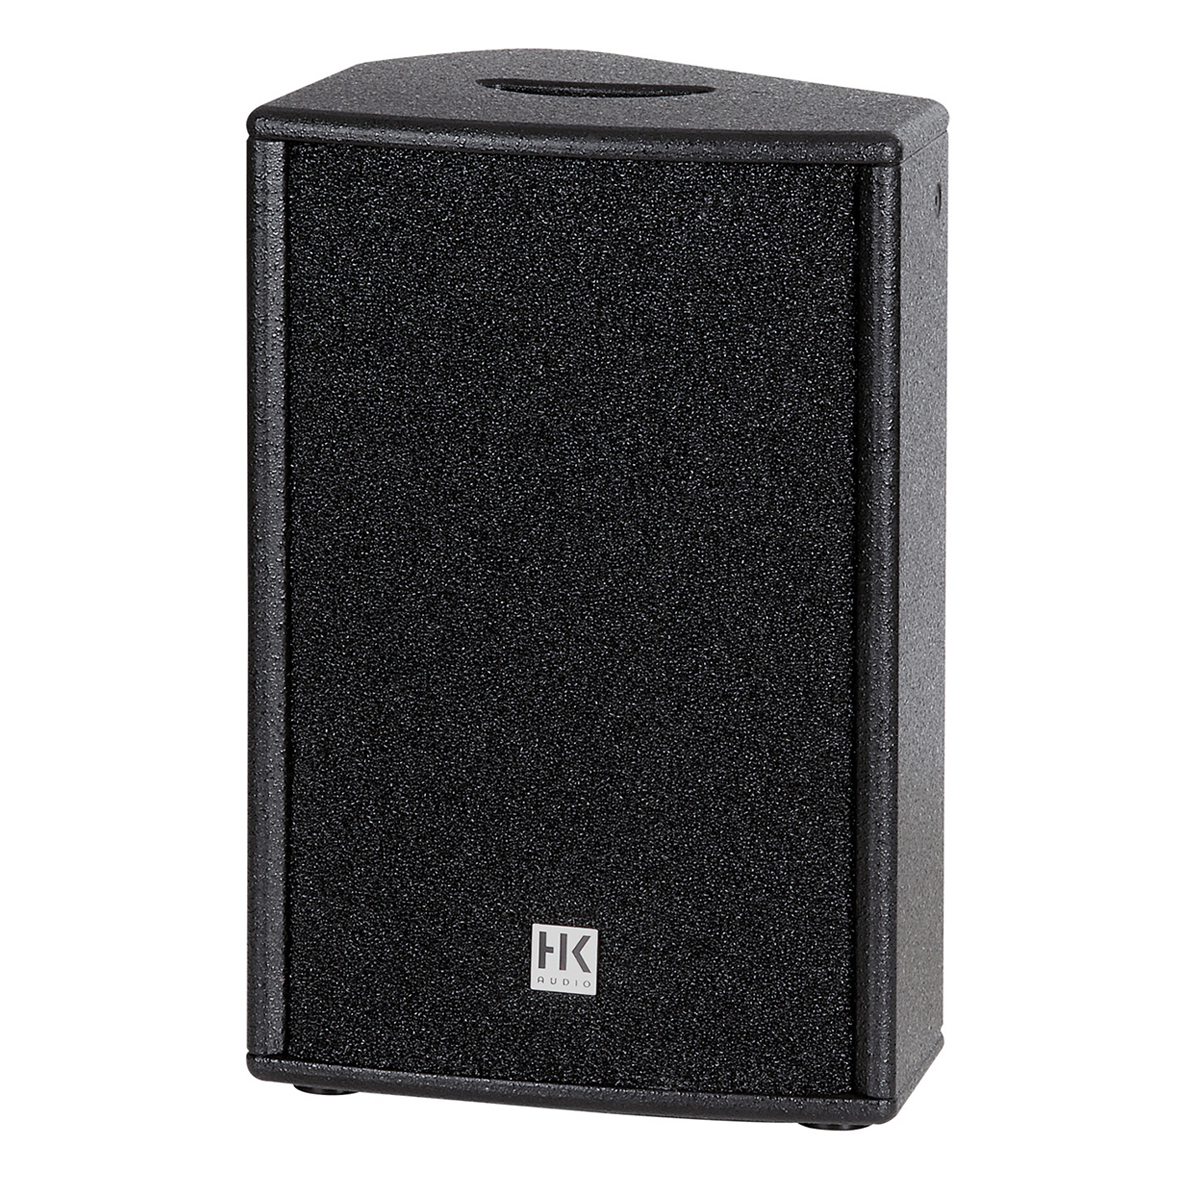 HK Audio PREMIUM PR:O 15D Active Speaker 15